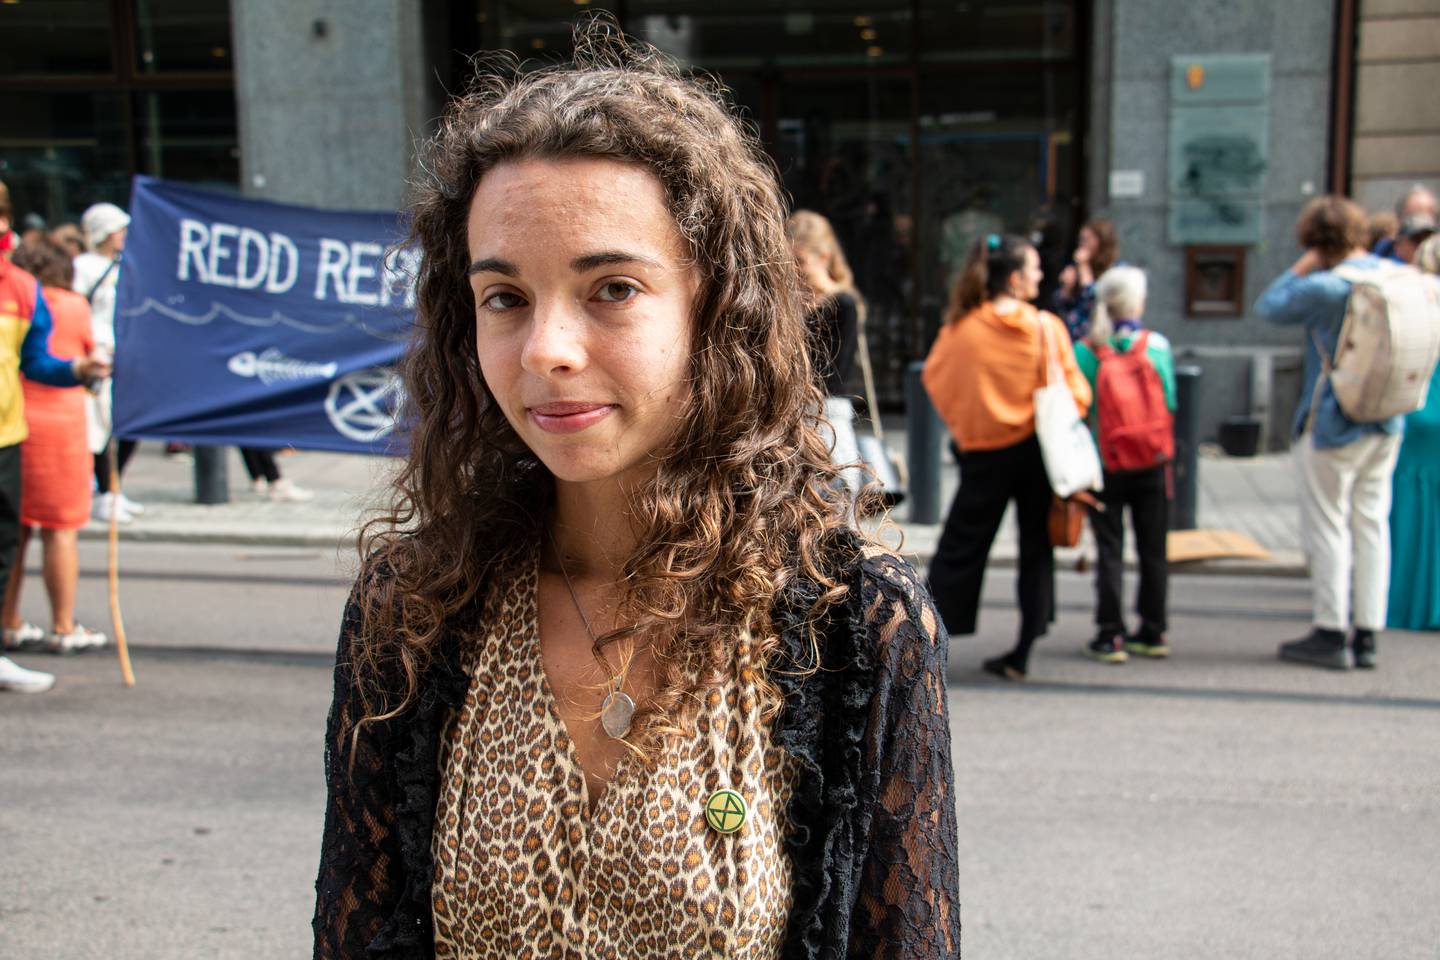 Sara står foran klima og miljødepartementet. De har nettopp hatt en demonstrasjon hvor de har brukt svart konditorfarge på dørene.